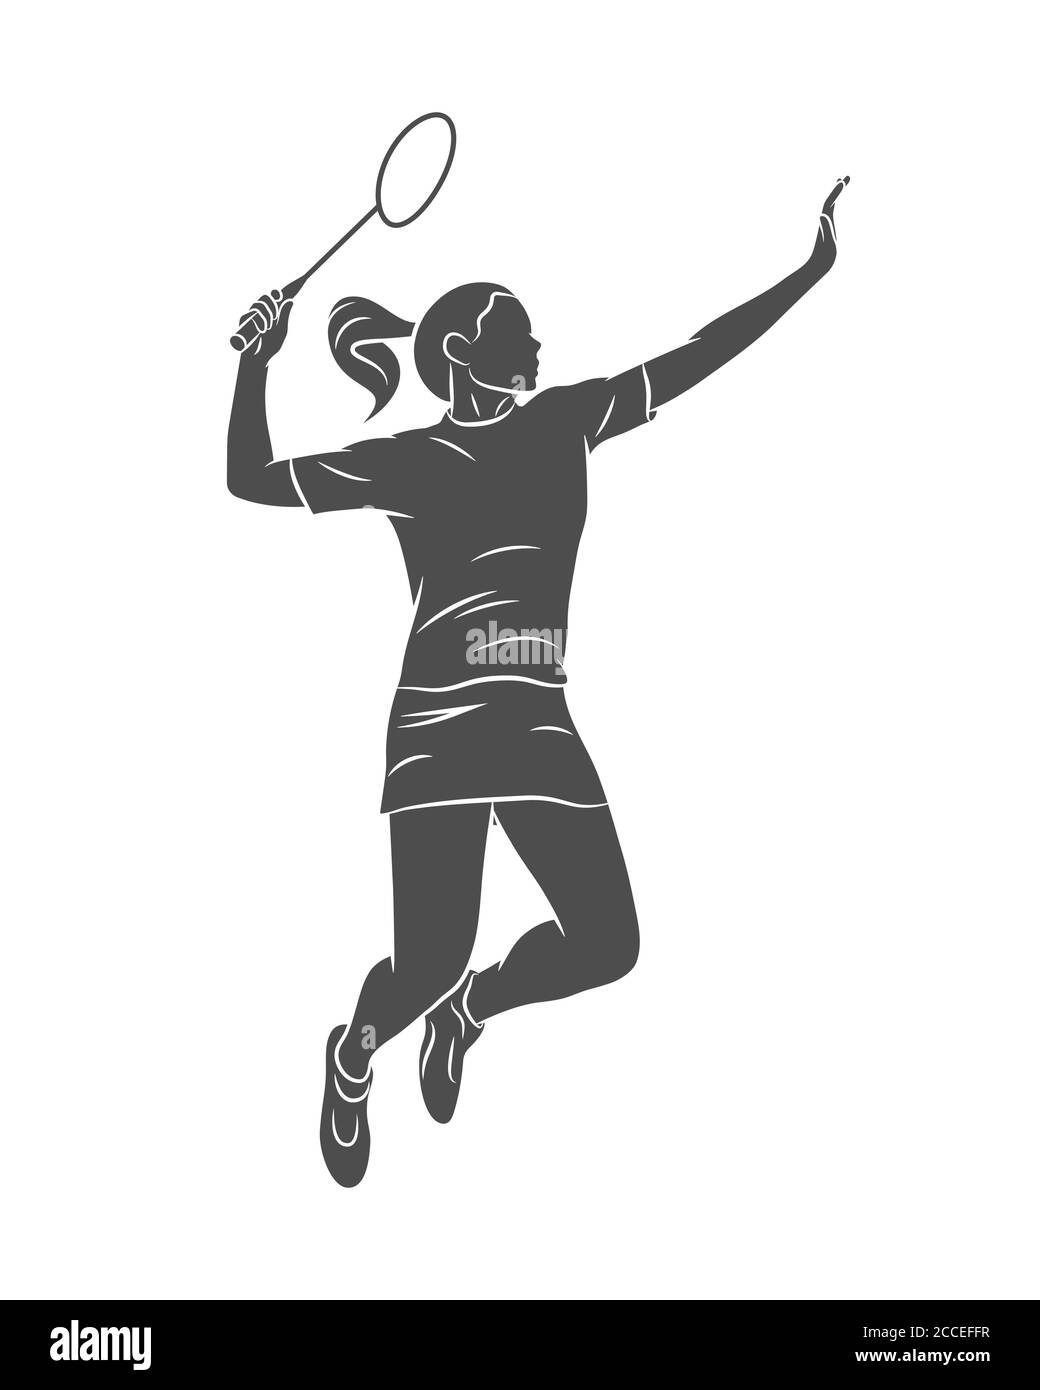 Junge Badmintonspielerin, die mit einem Schläger springt Stock Vektor